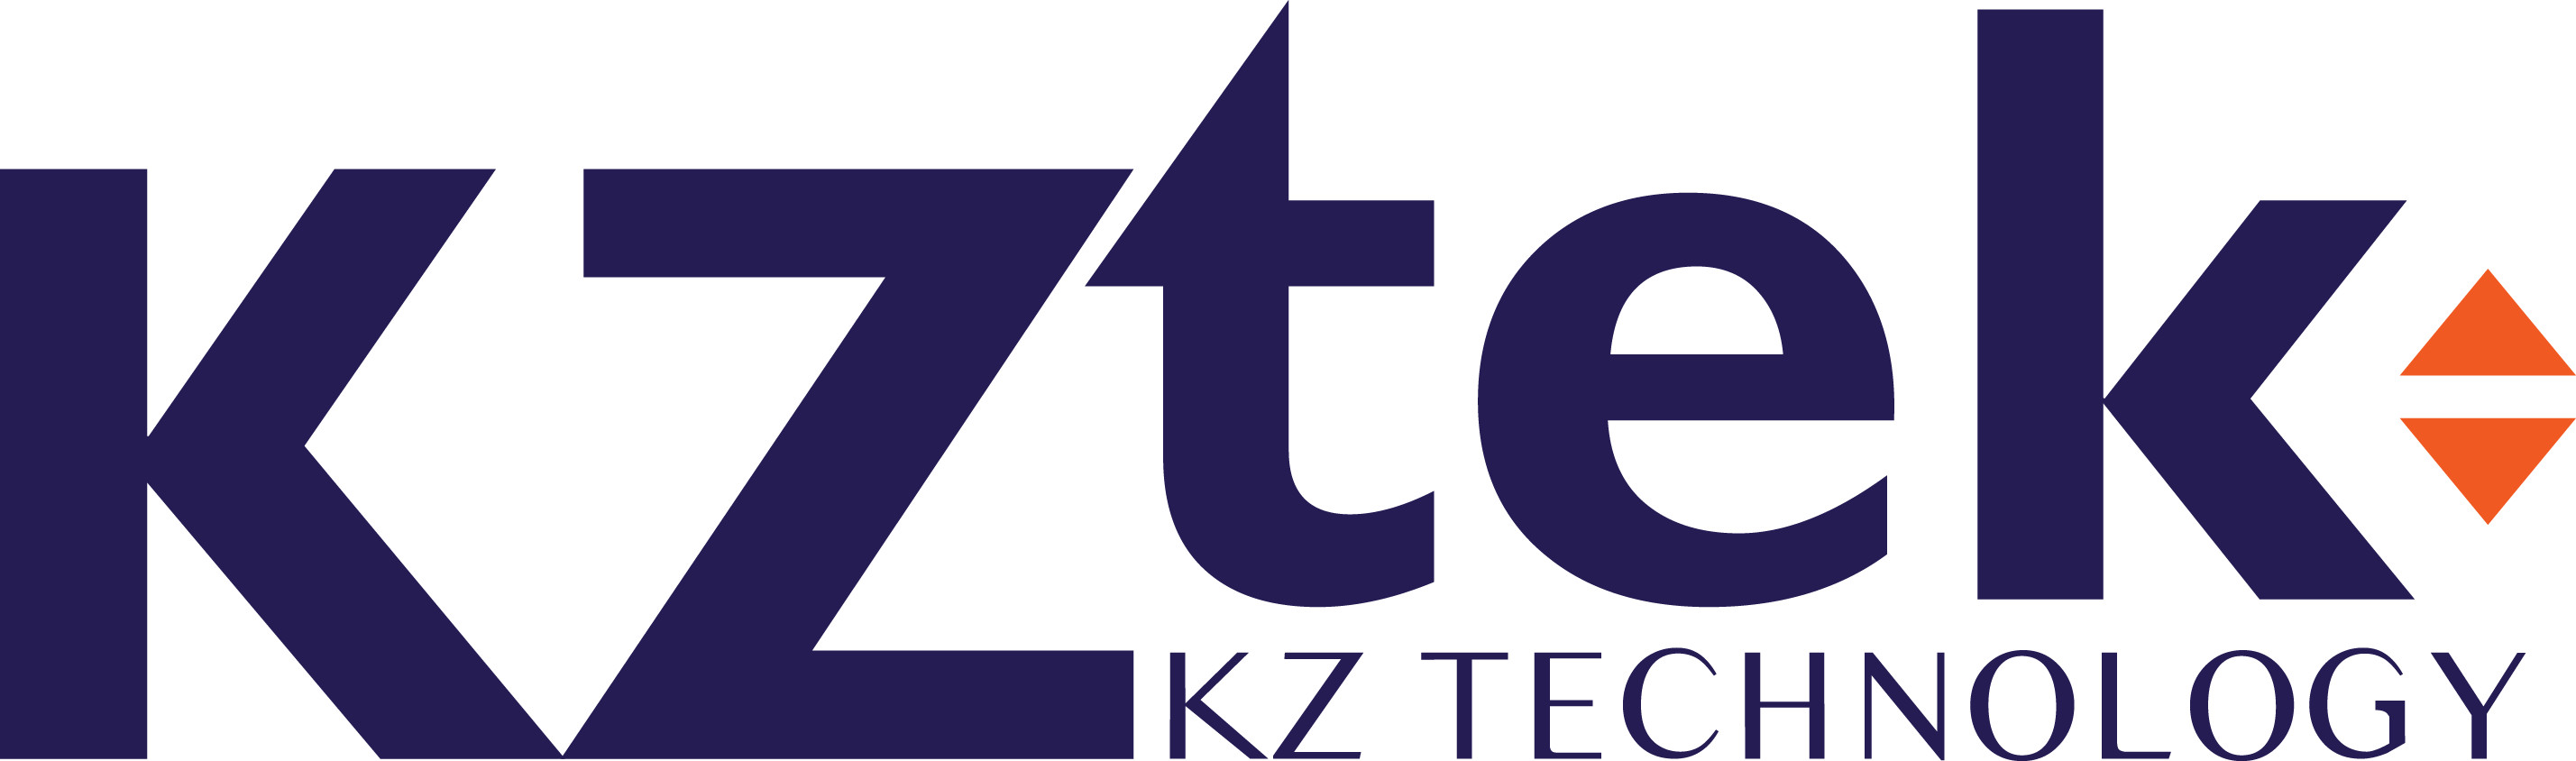 Công ty cổ phần đầu tư và phát triển KZTEK